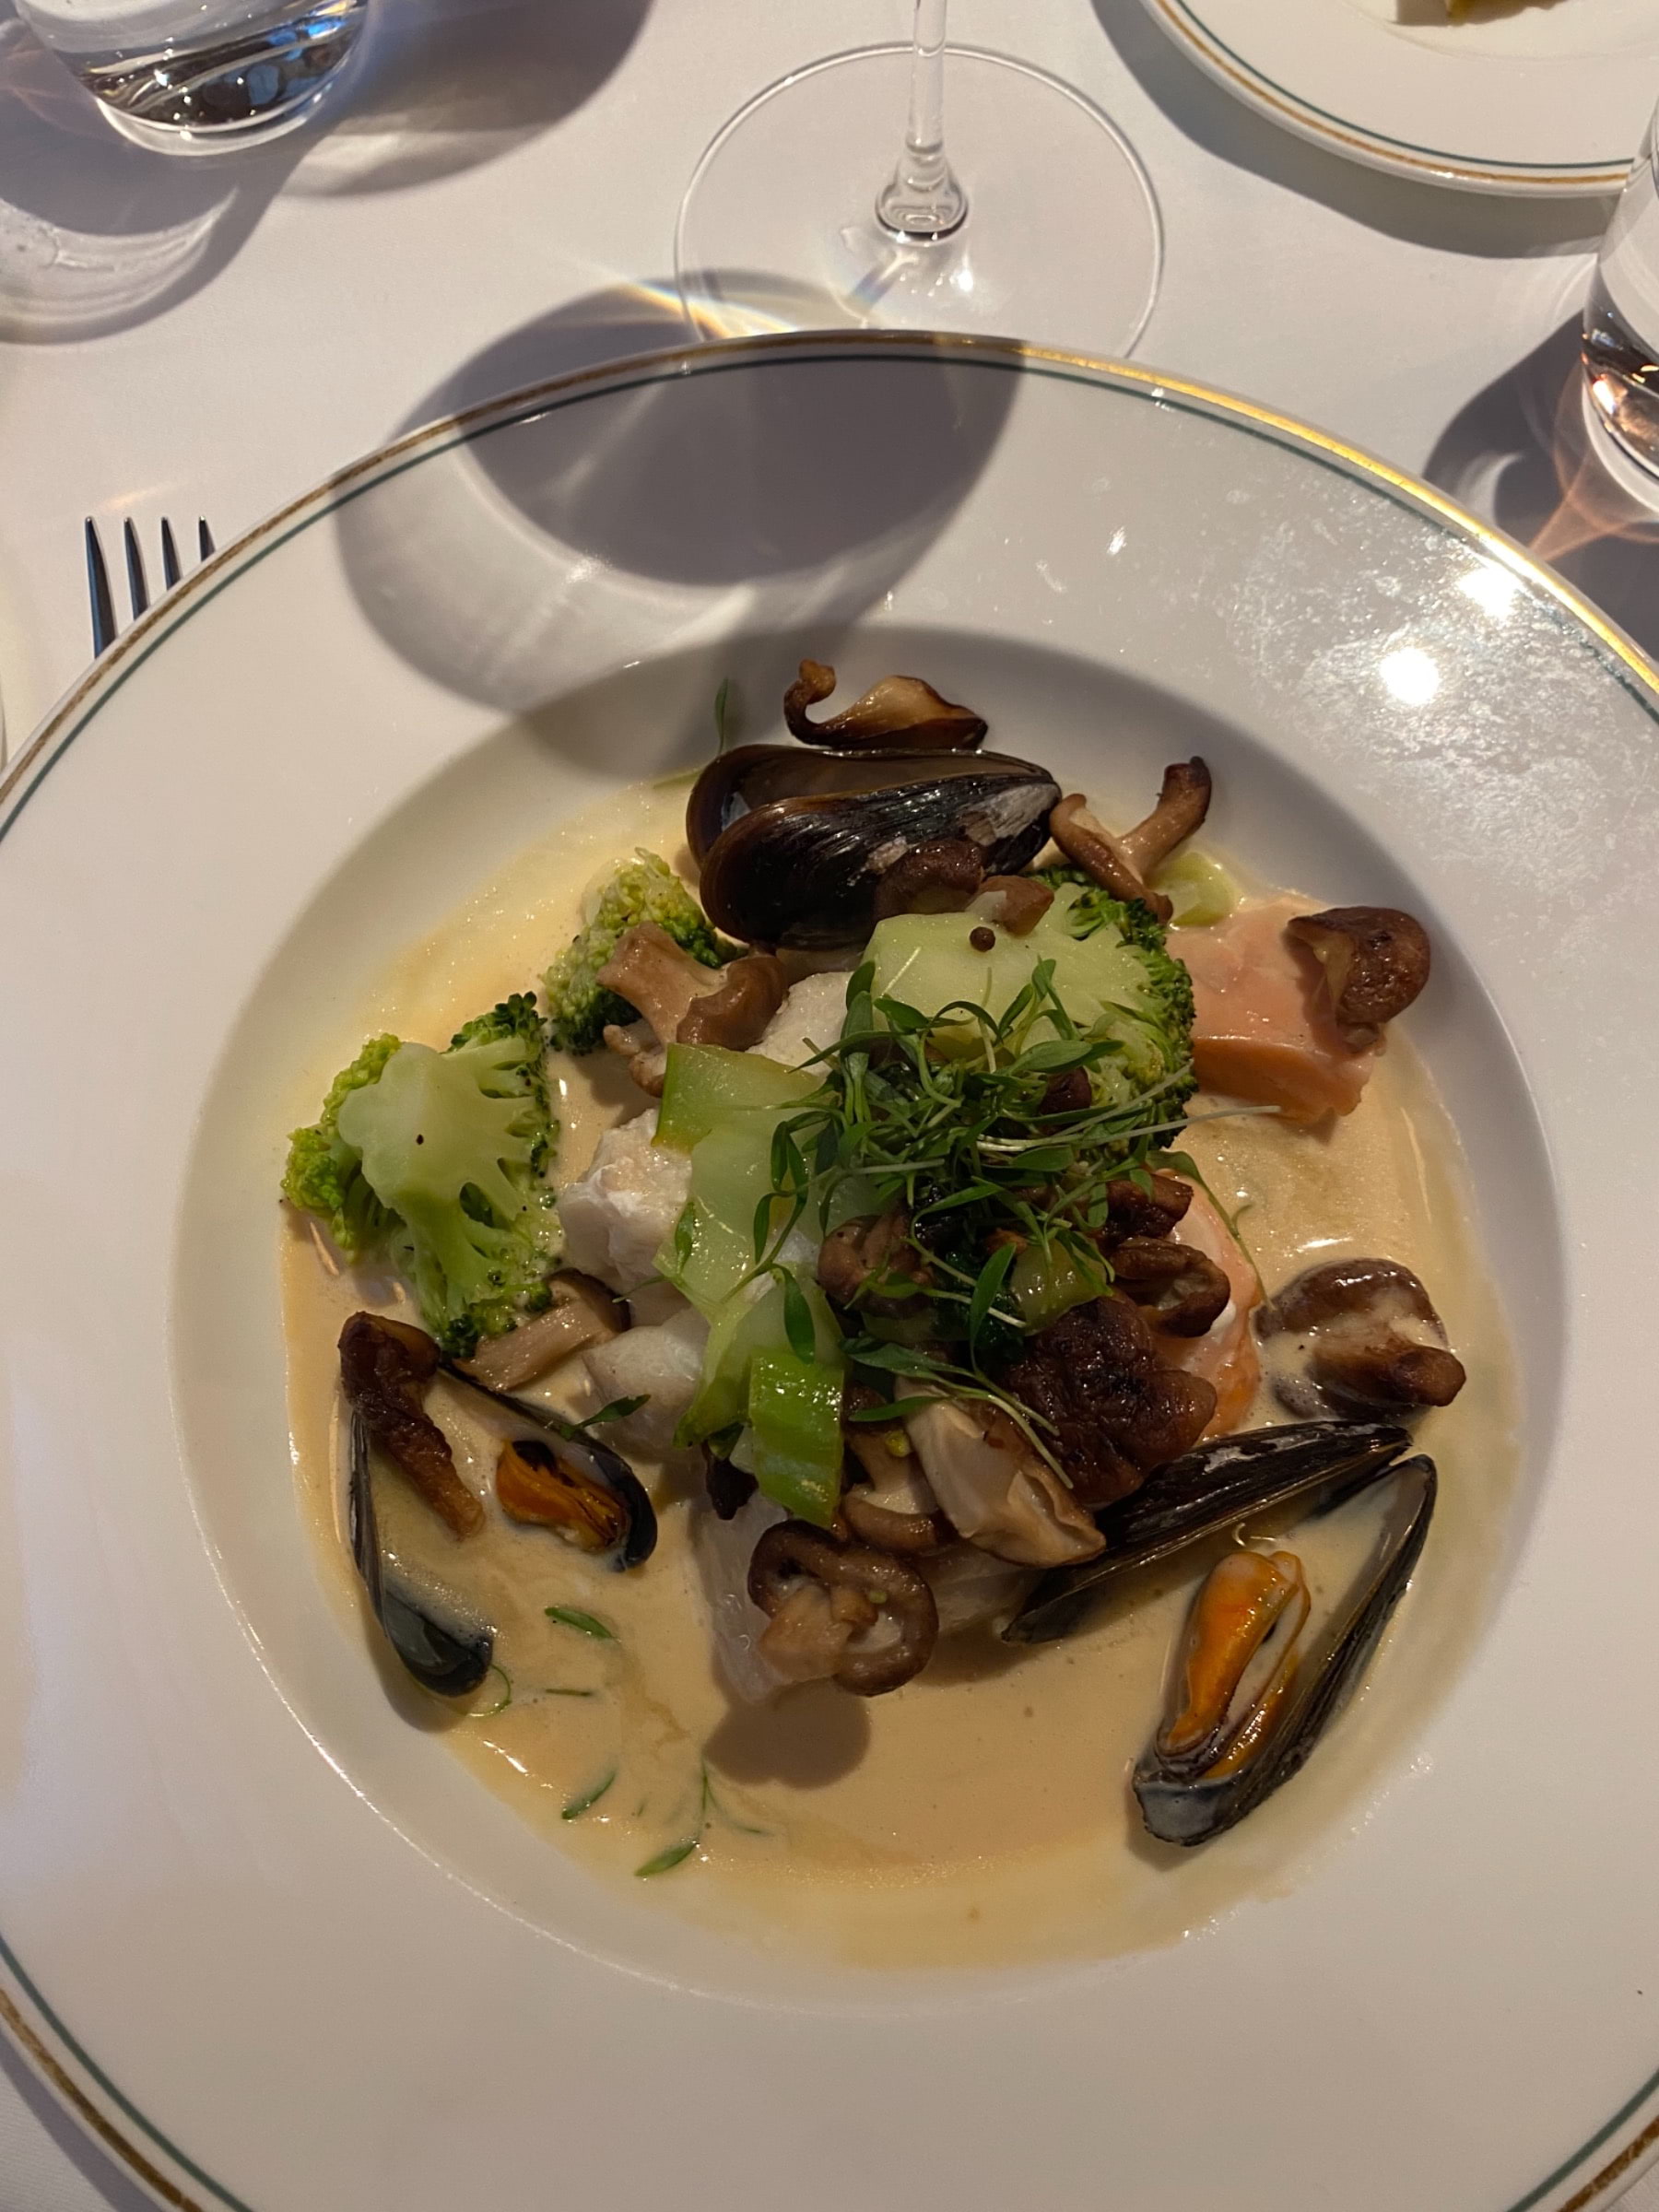 Dagens fisksoppa med torsk, lax, musslor och broccoli.  – Bild från Brasserie Astoria av Sofie L. (2021-11-23)